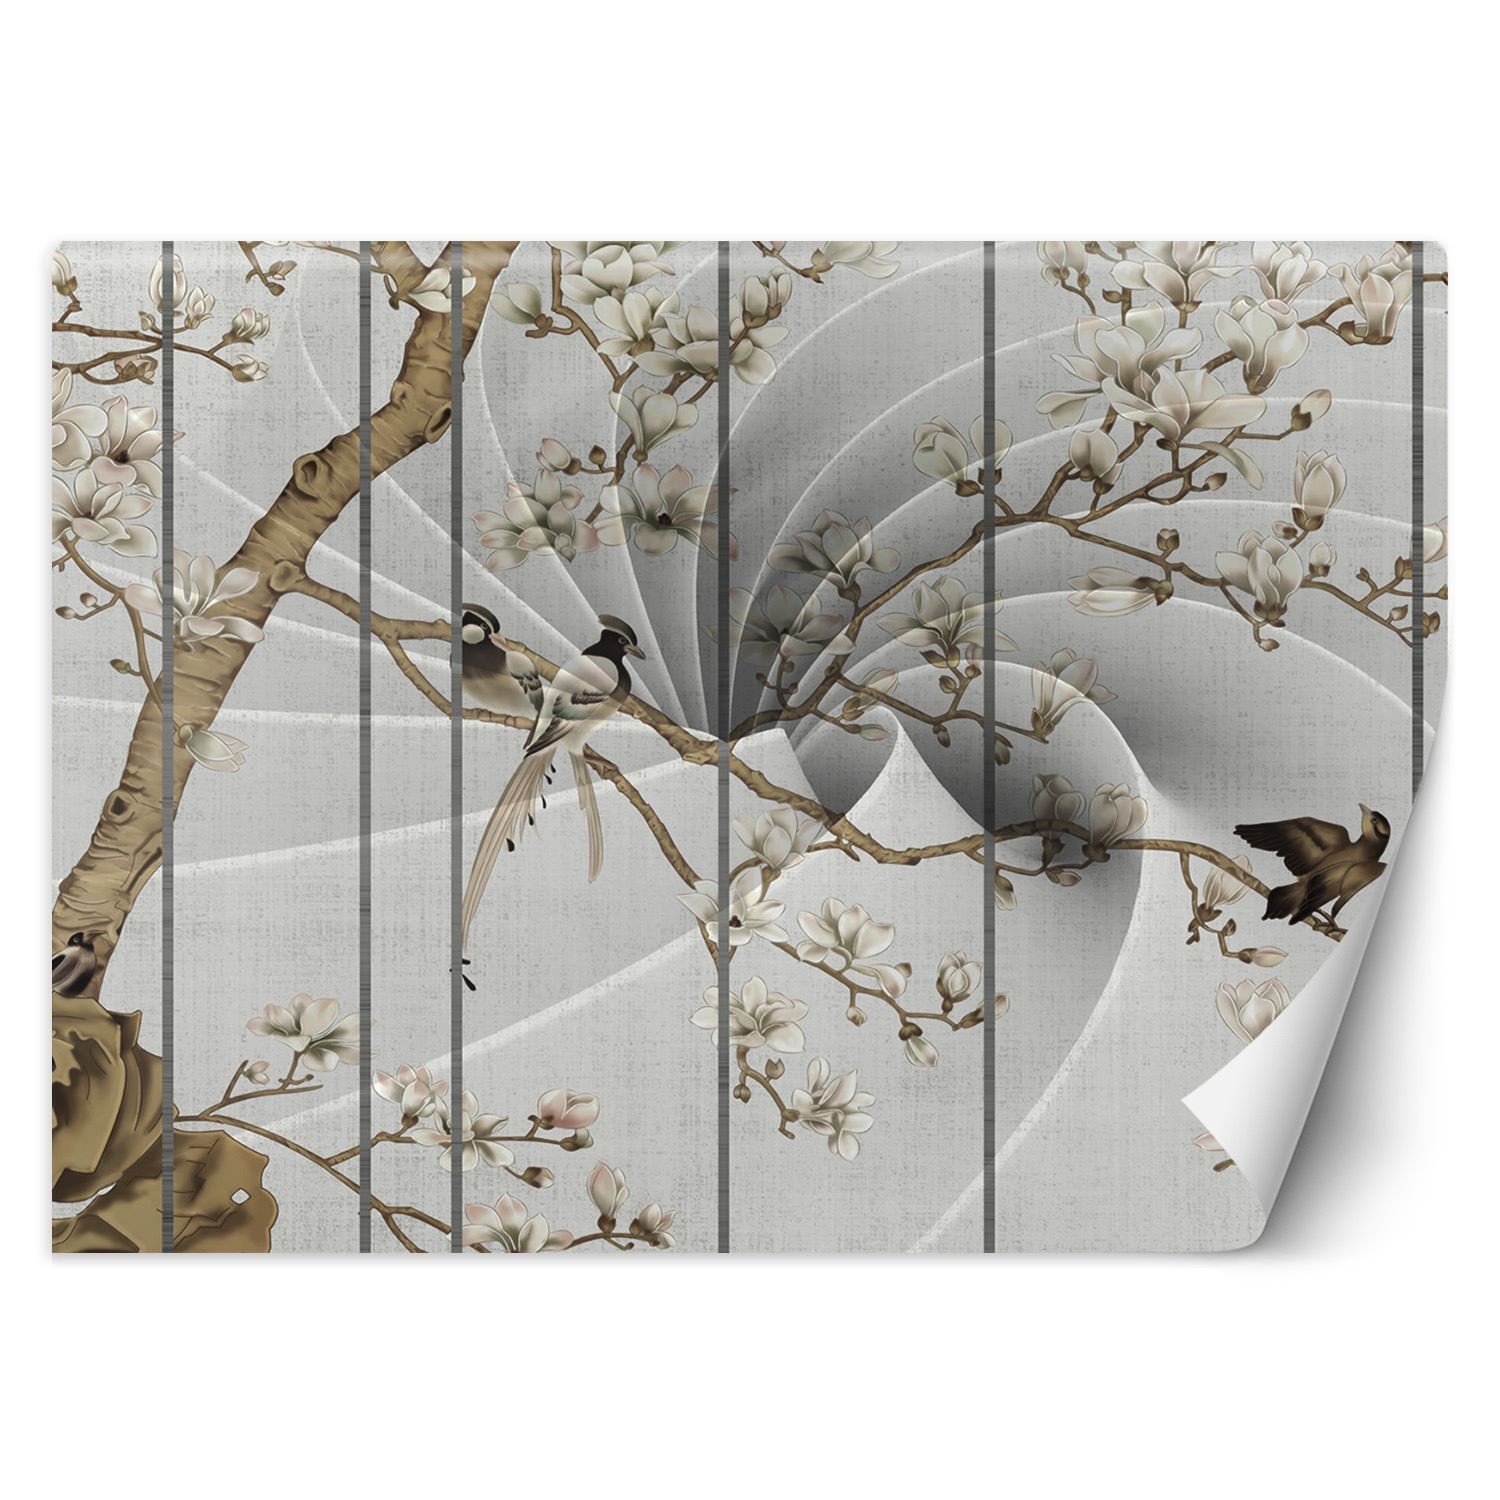 Trend24 – Behang – Vogels Op Een Boom – Behangpapier – Behang Woonkamer – Fotobehang – 250x175x2 cm – Incl. behanglijm